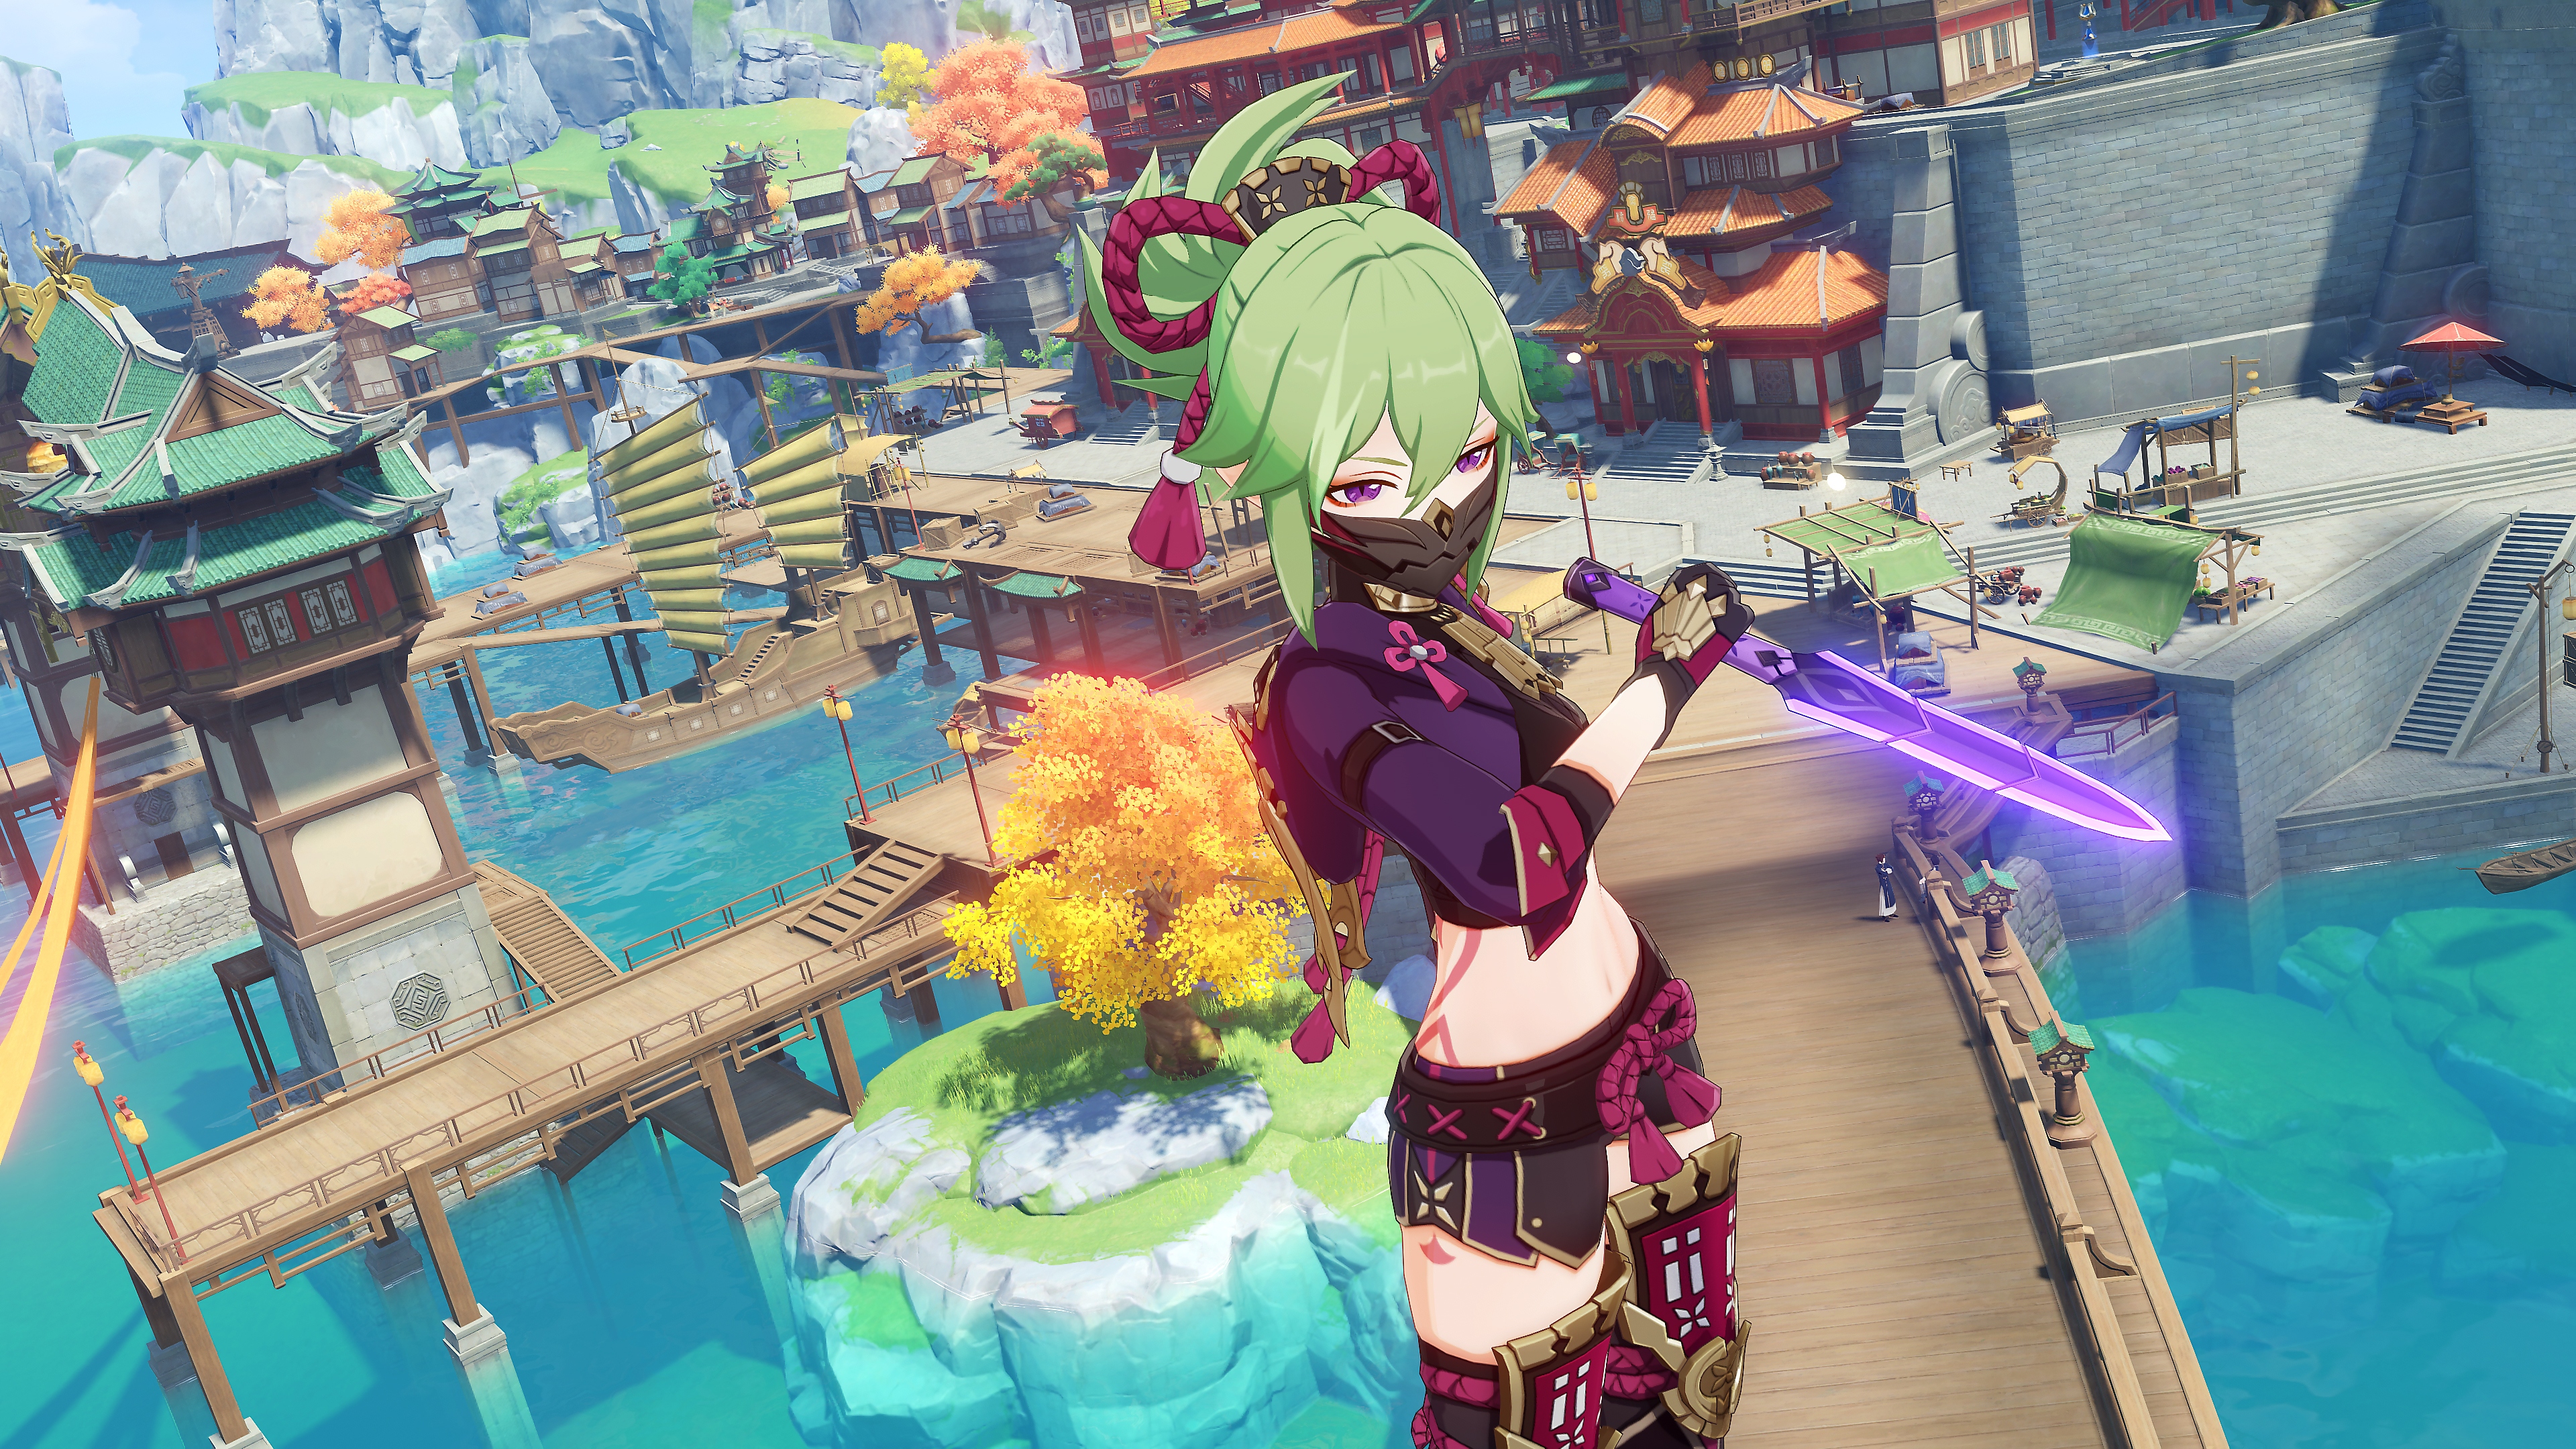 Genshin Impact: 2.7 Update screenshot showing a character with green hair wielding a glowing purple blade